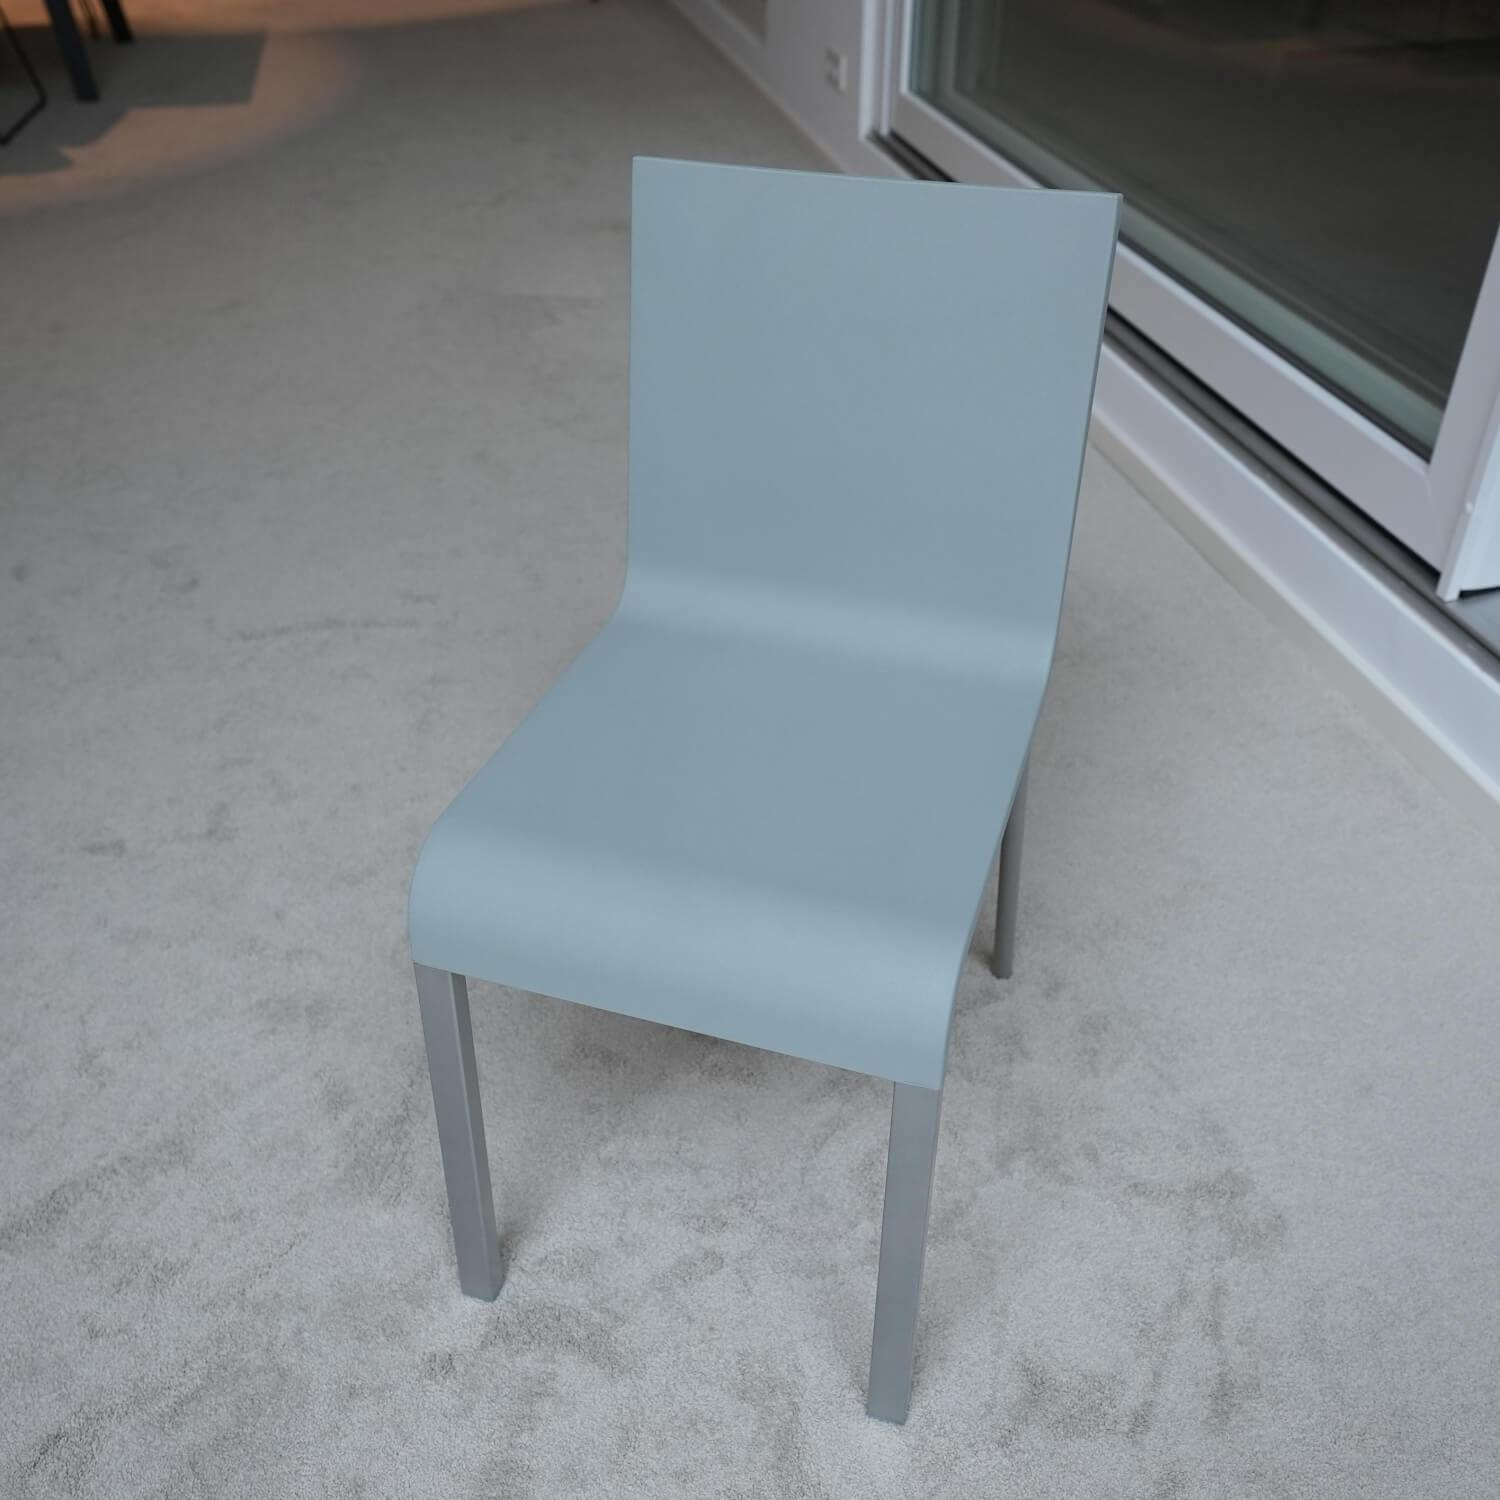 Stuhl 03 Sitzschalenfarbe Hellgrau Untergestell Pulverbeschichtet Silber Glatt